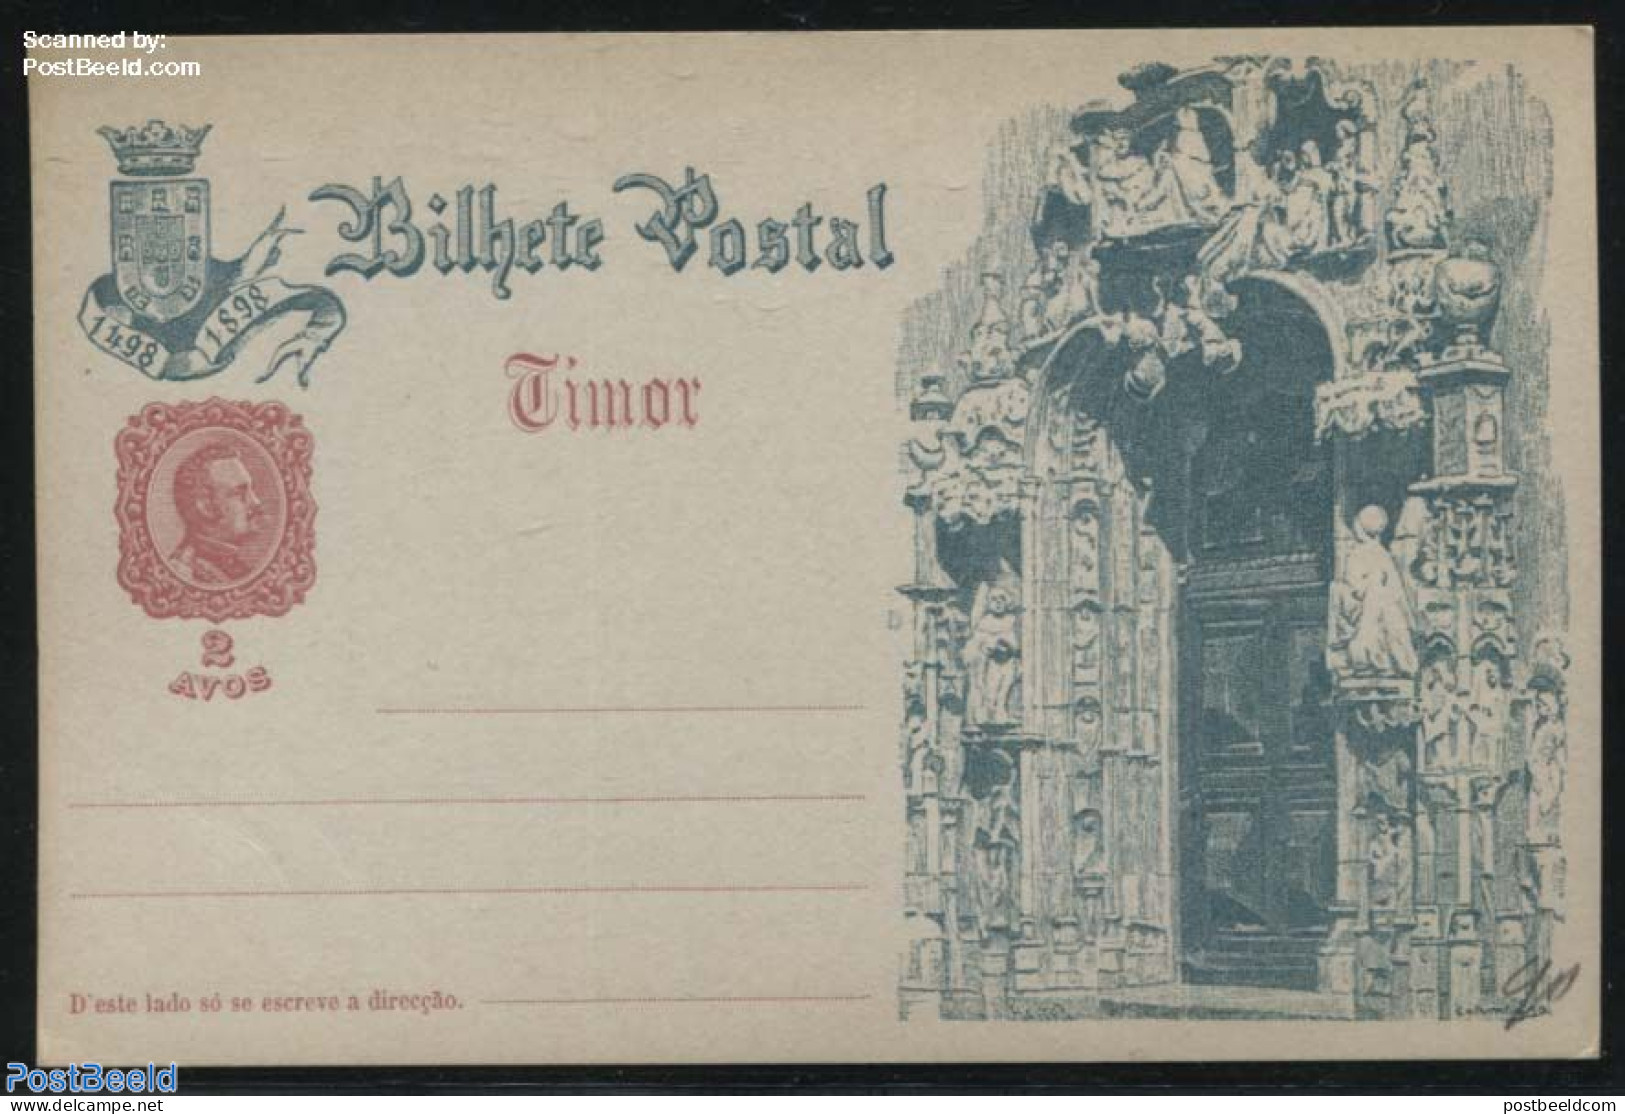 Timor 1898 Illustrated Postcard, 2 Avos, Portal, Unused Postal Stationary - East Timor